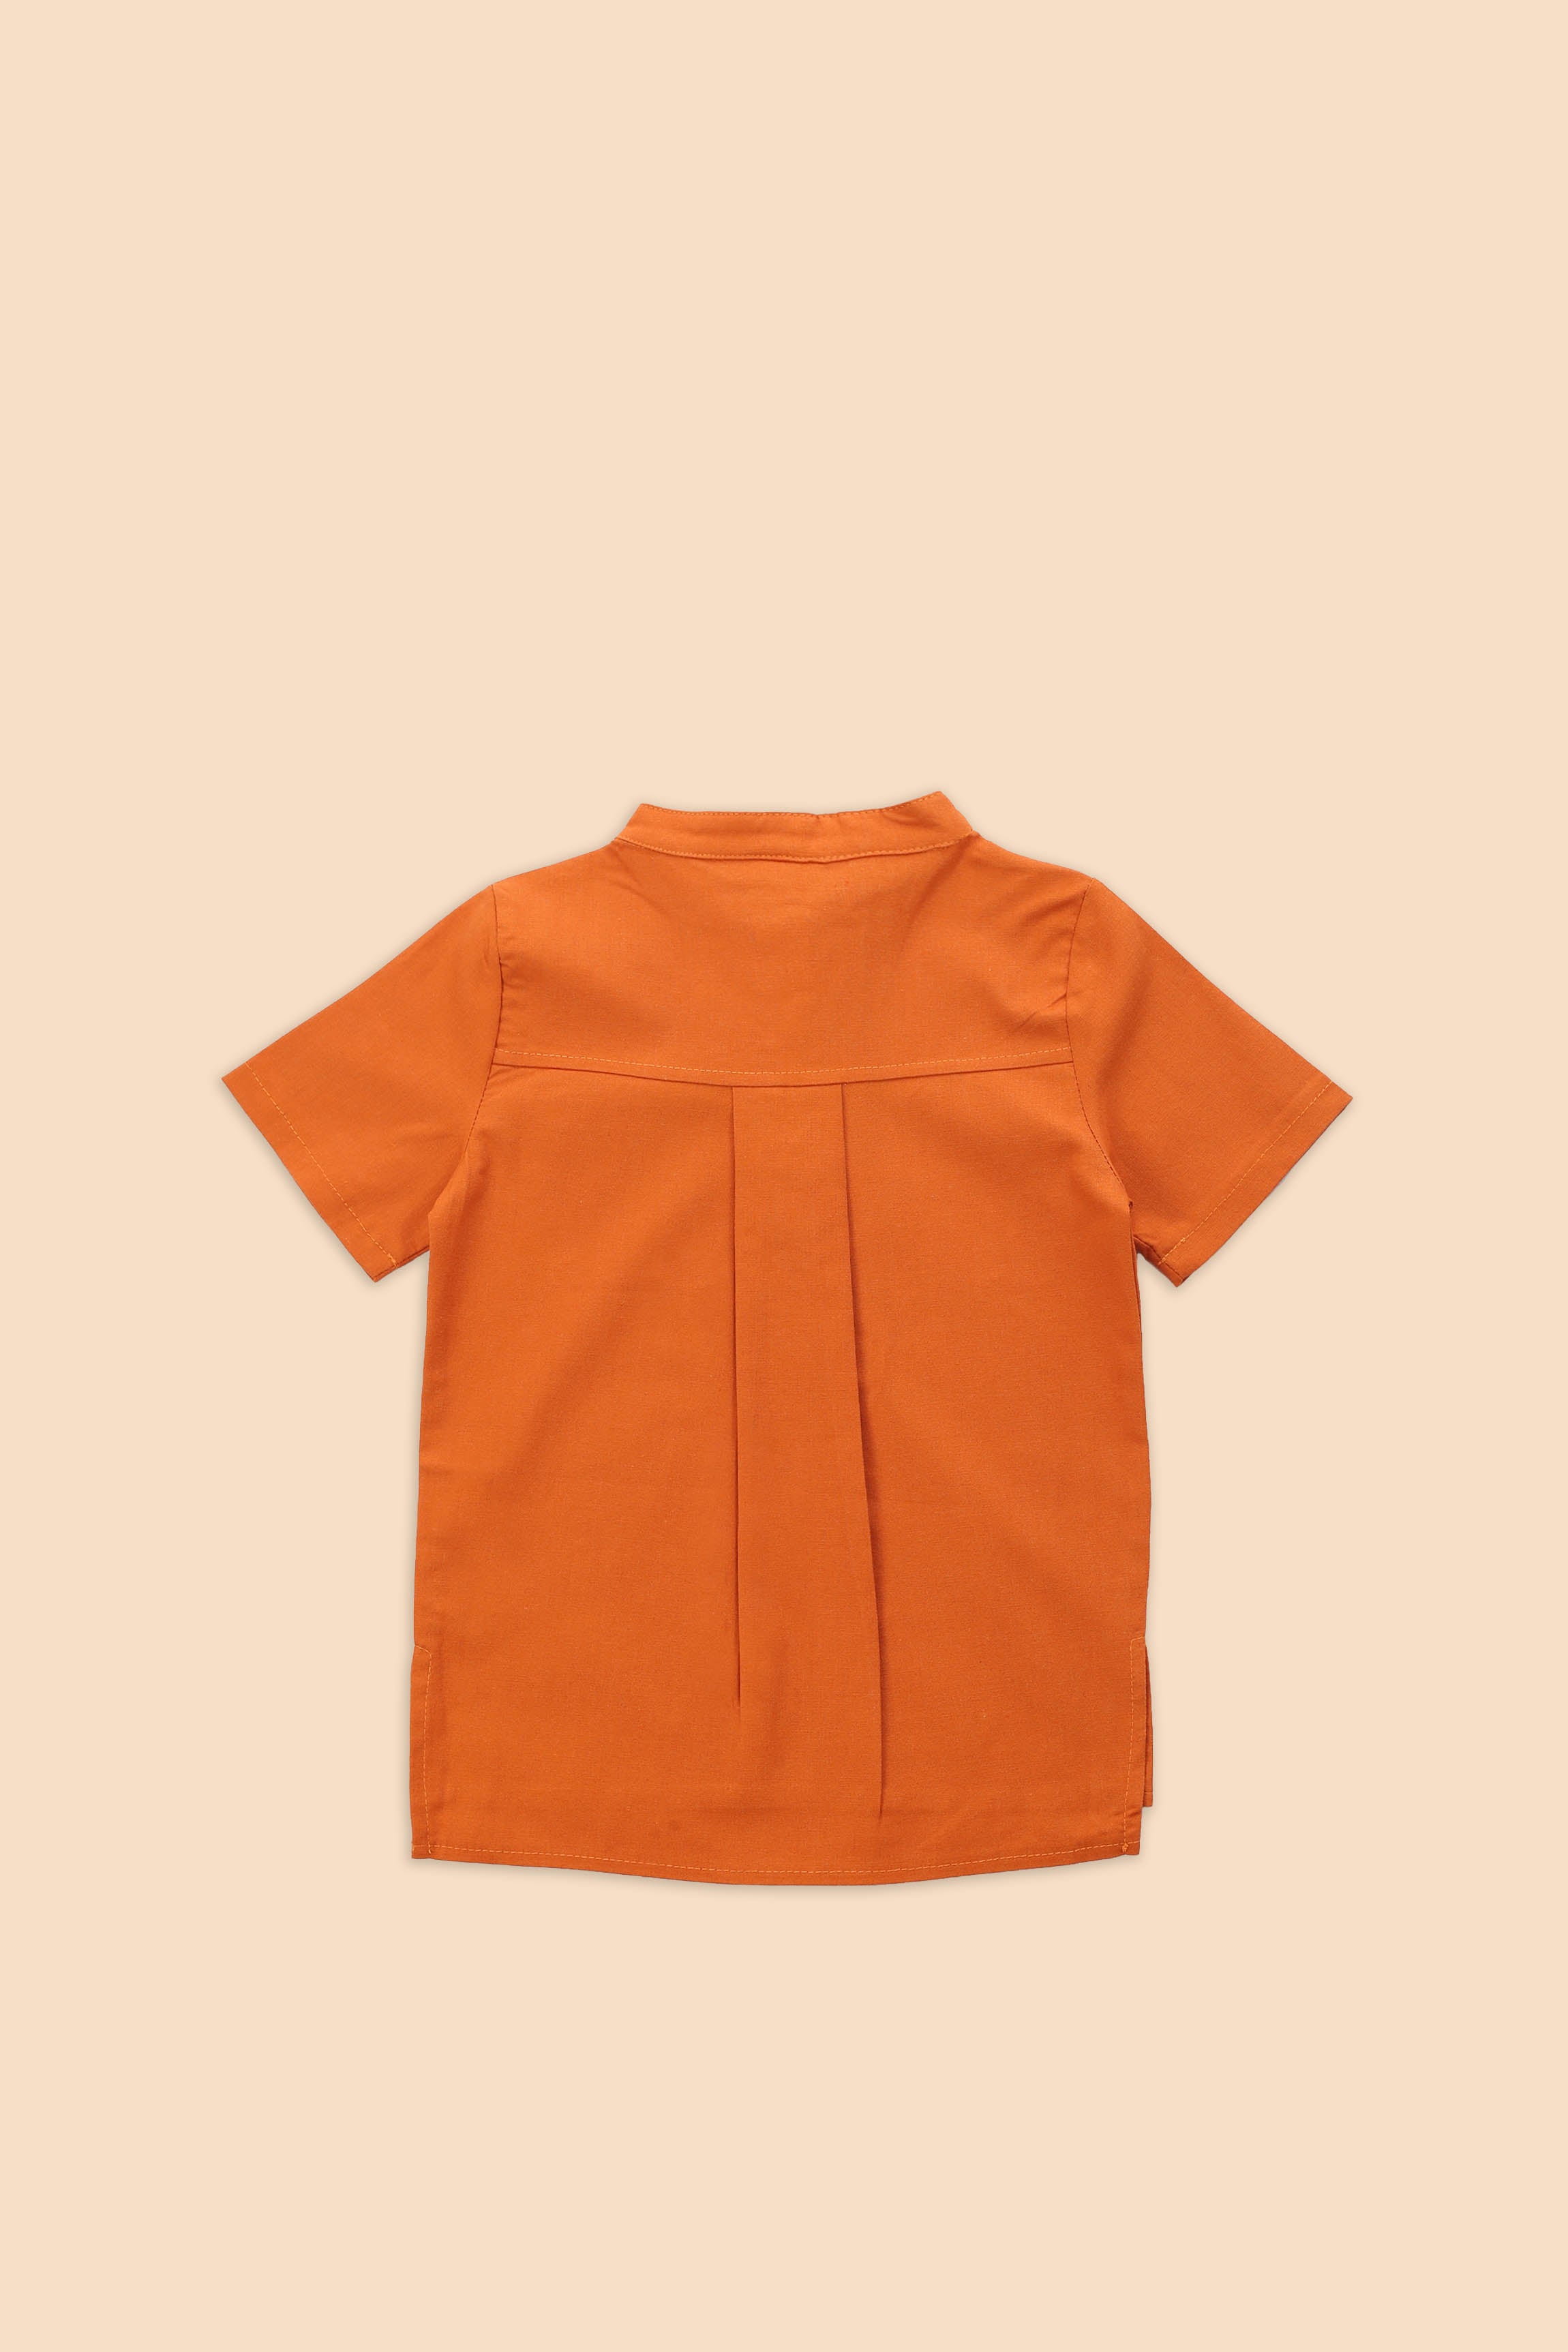 The Matahari Short Sleeves Shirt Orange